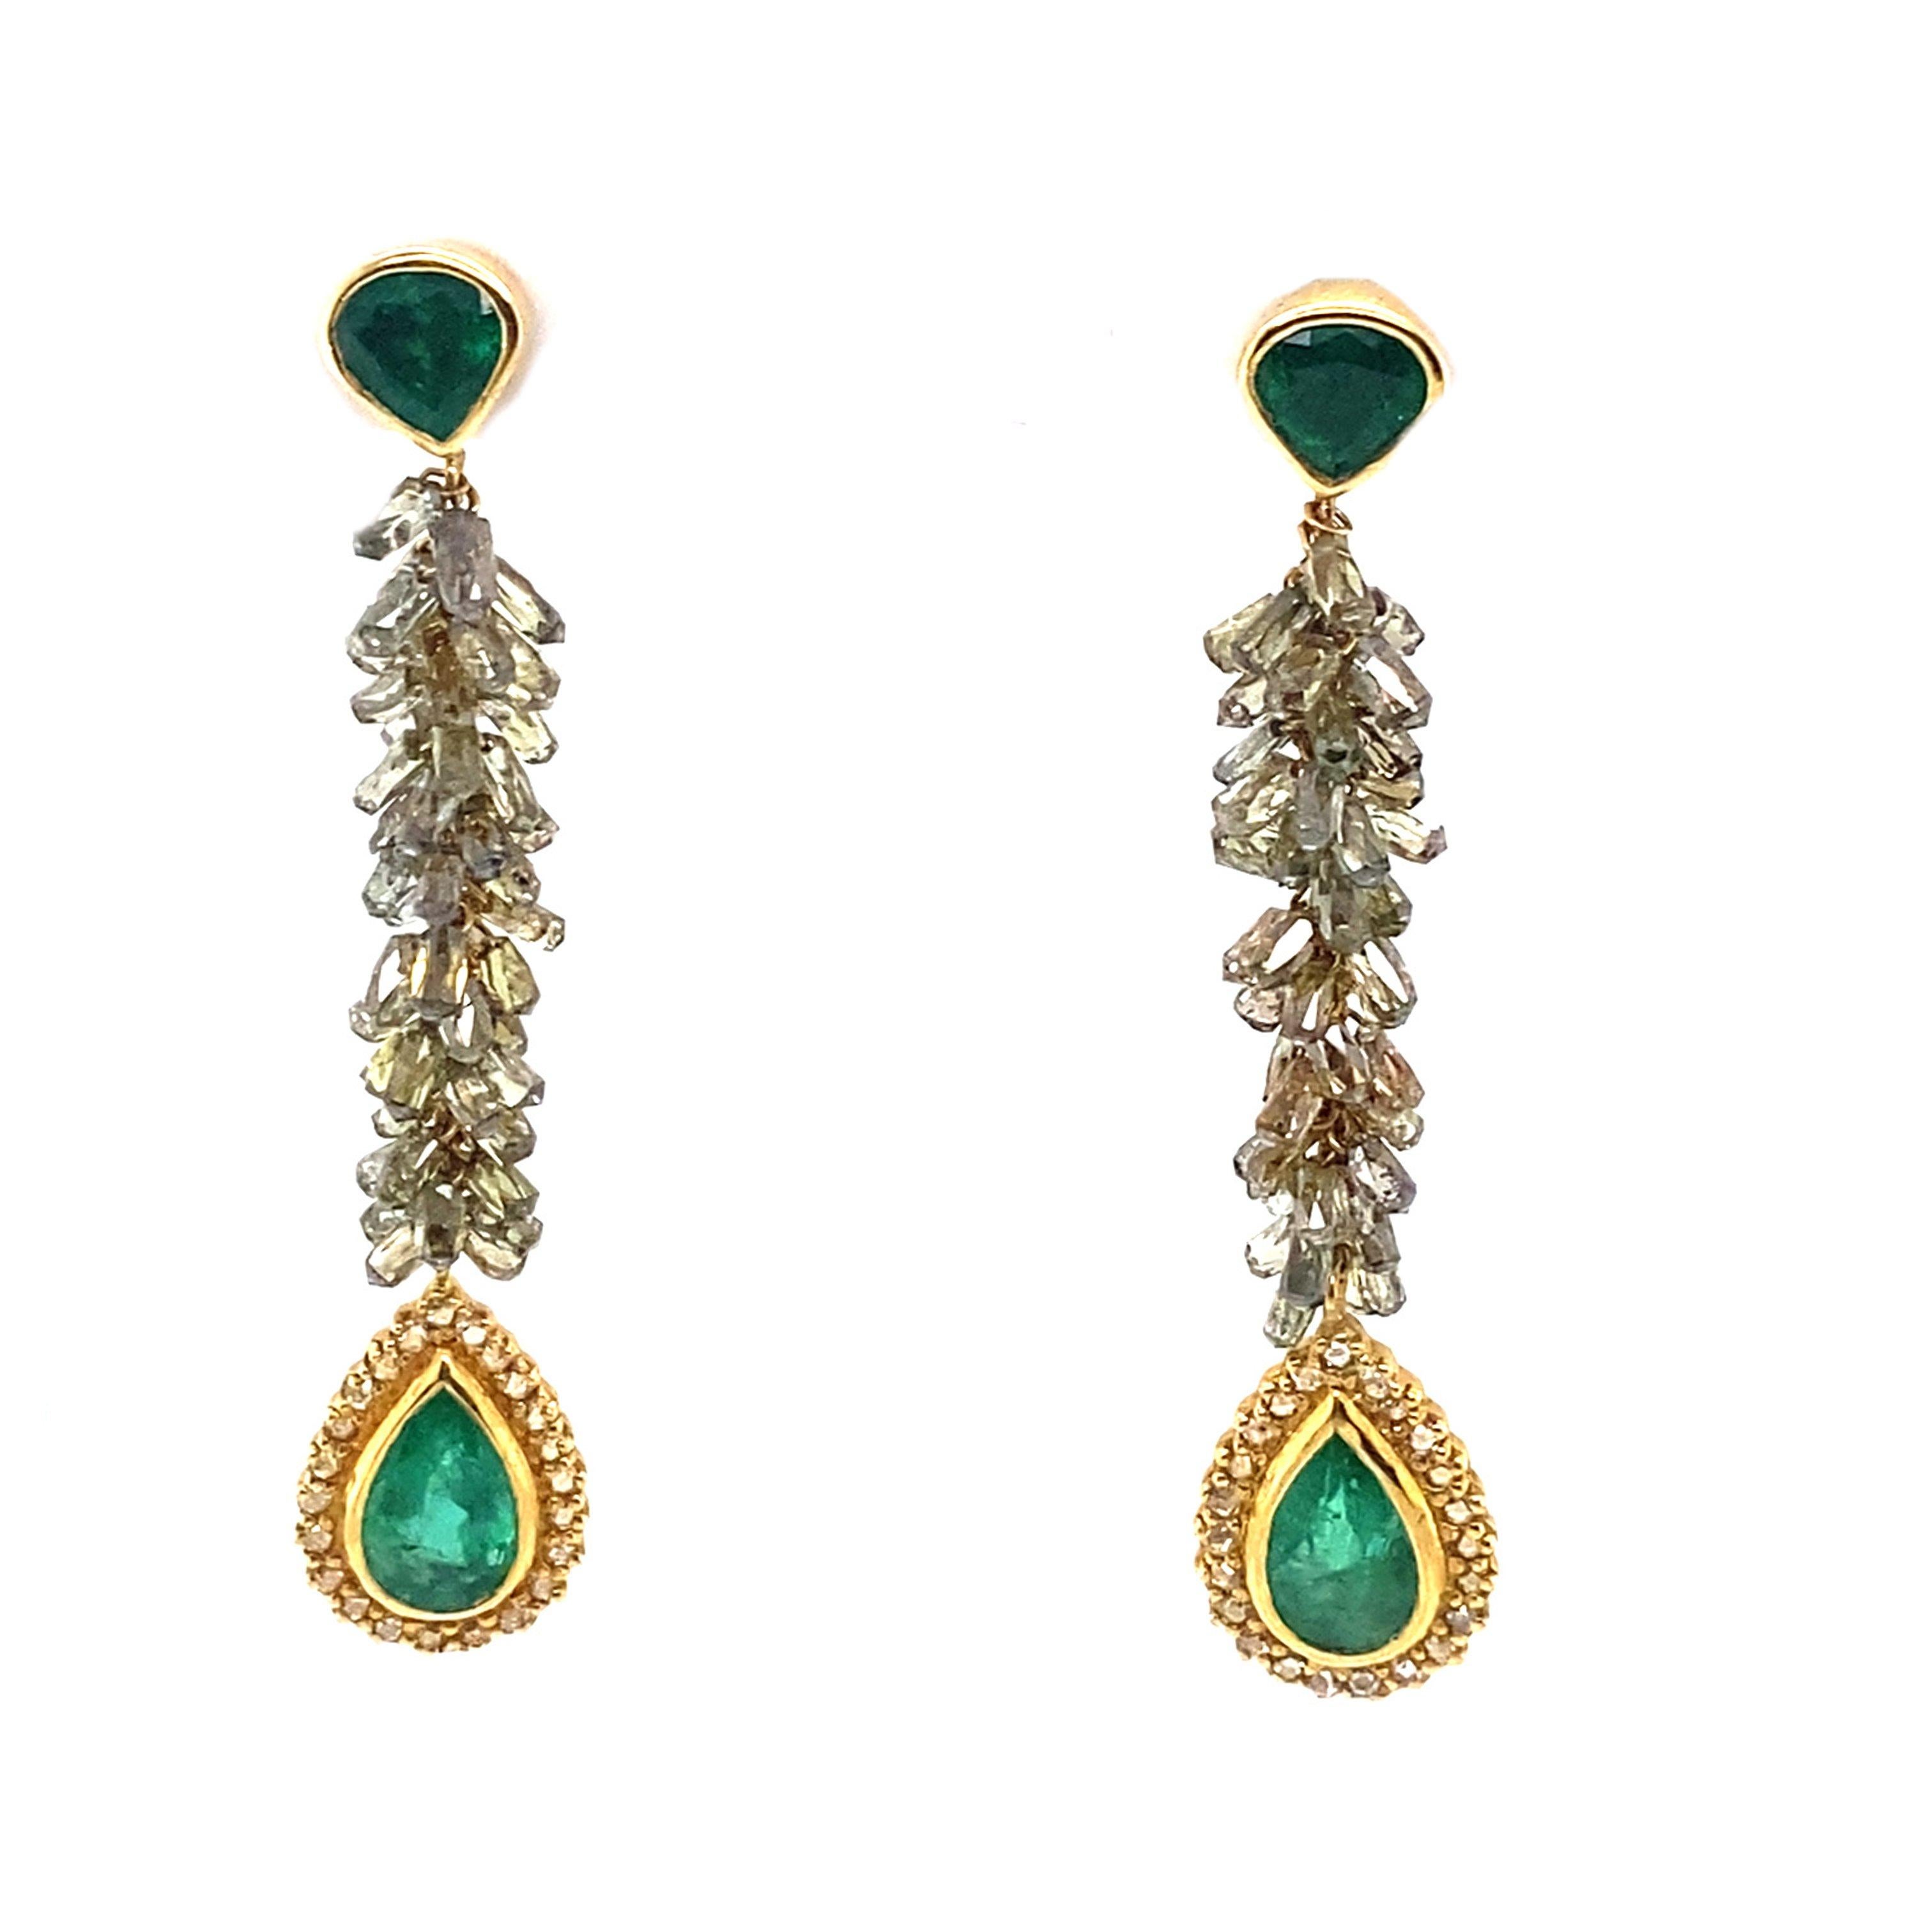 Luminosity-Ohrringe aus 20 Karat Gelbgold mit 2,65 Karat braunen Diamantperlen und 7,46 Karat birnenförmigen Smaragden. Diese Ohrringe sind mit 0,27 Karat reiner Qualität Rose-Cut Diamanten als gut.